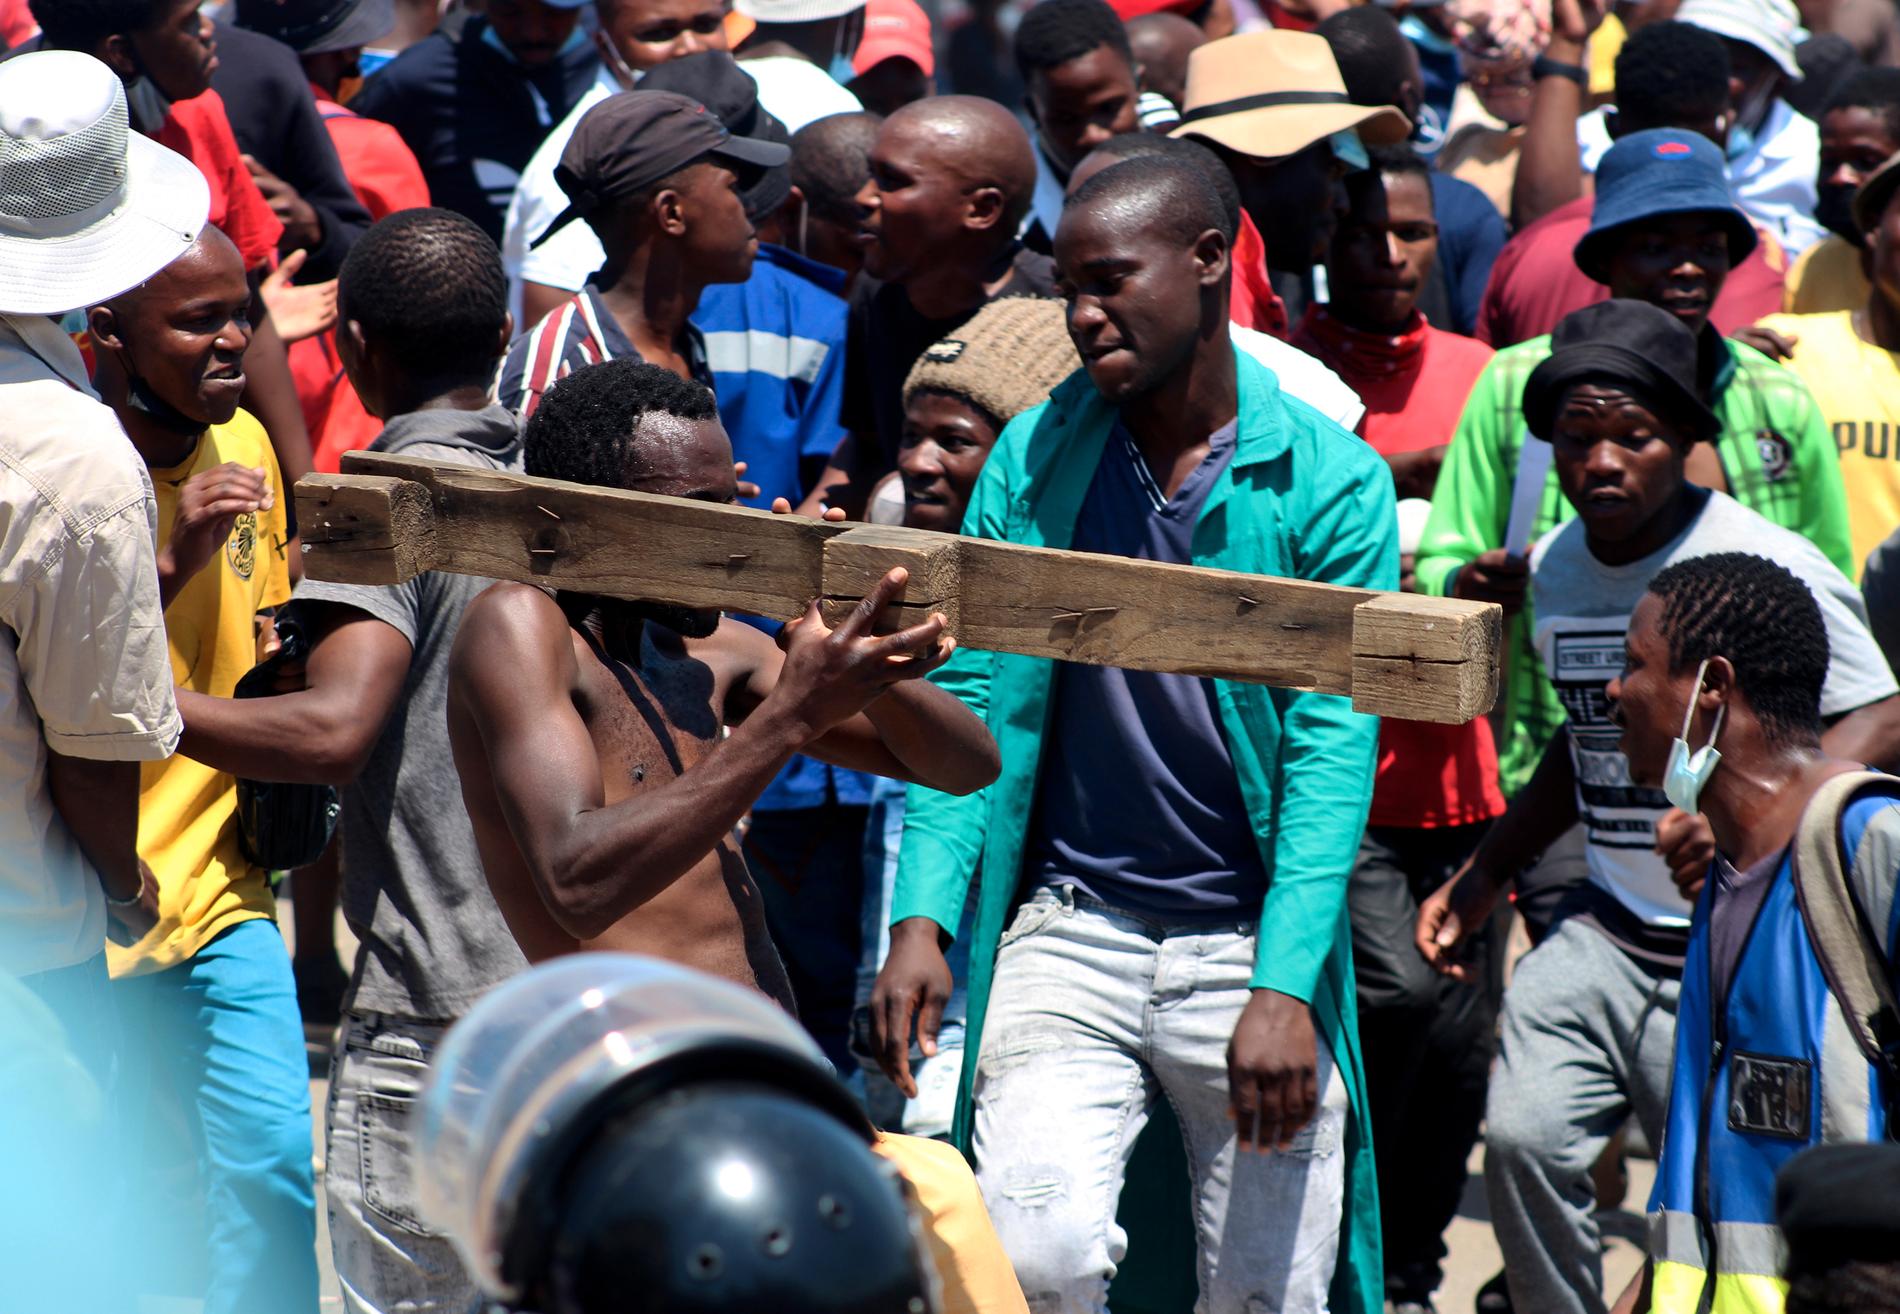 Kungen i Swaziland (Eswati) manar till lugn efter de senaste veckornas demonstrationer. Bild från en demonstration tidigare i oktober där en man symboliskt håller upp ett låtsasvapen i protest.